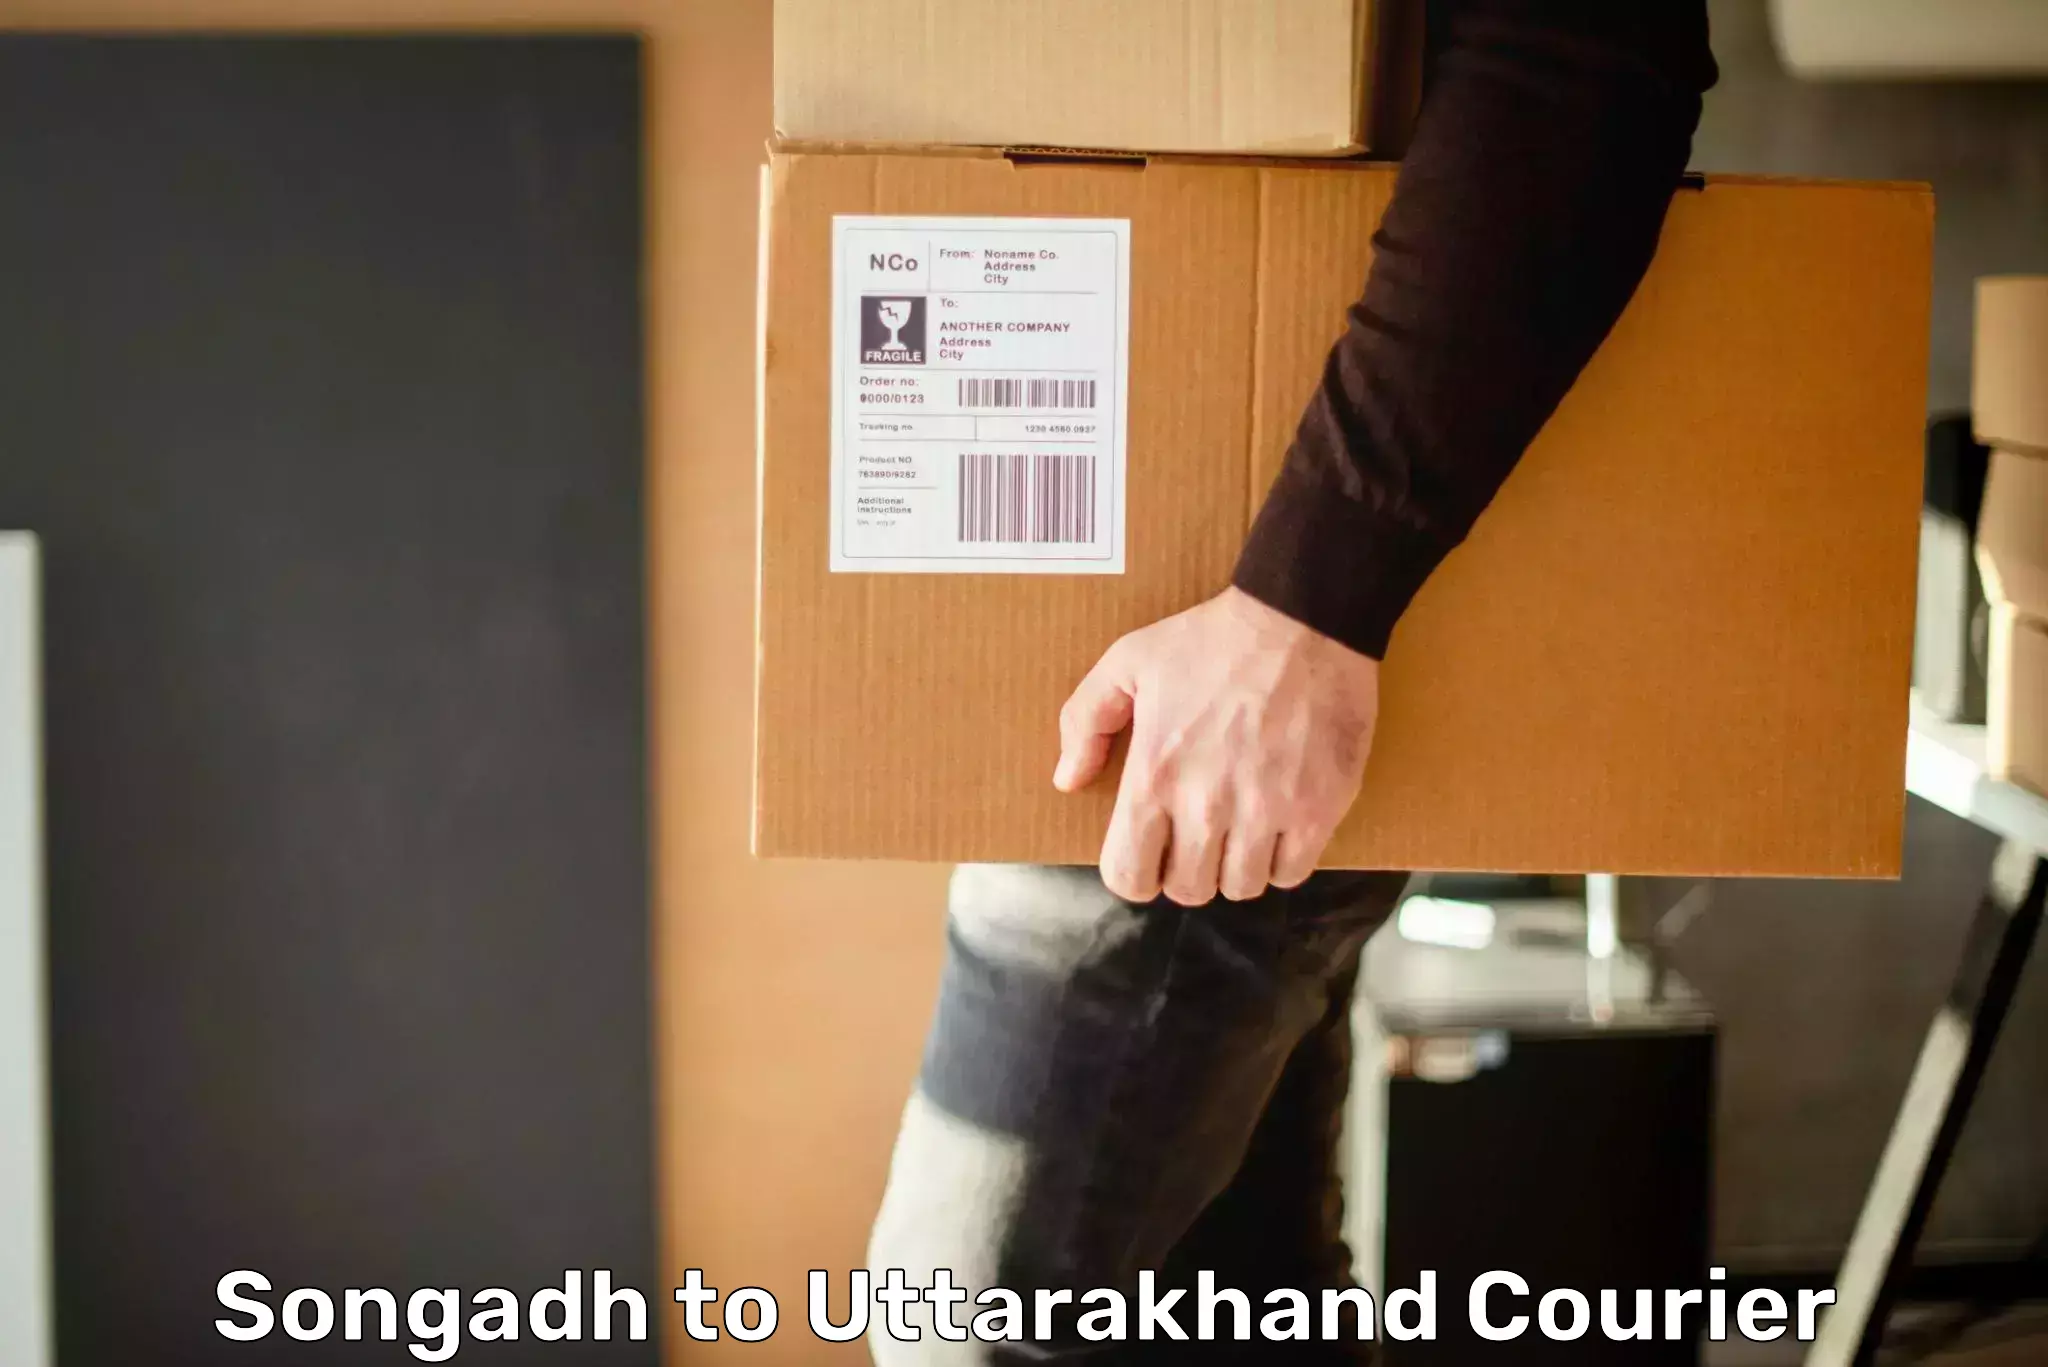 Easy return solutions Songadh to Uttarakhand